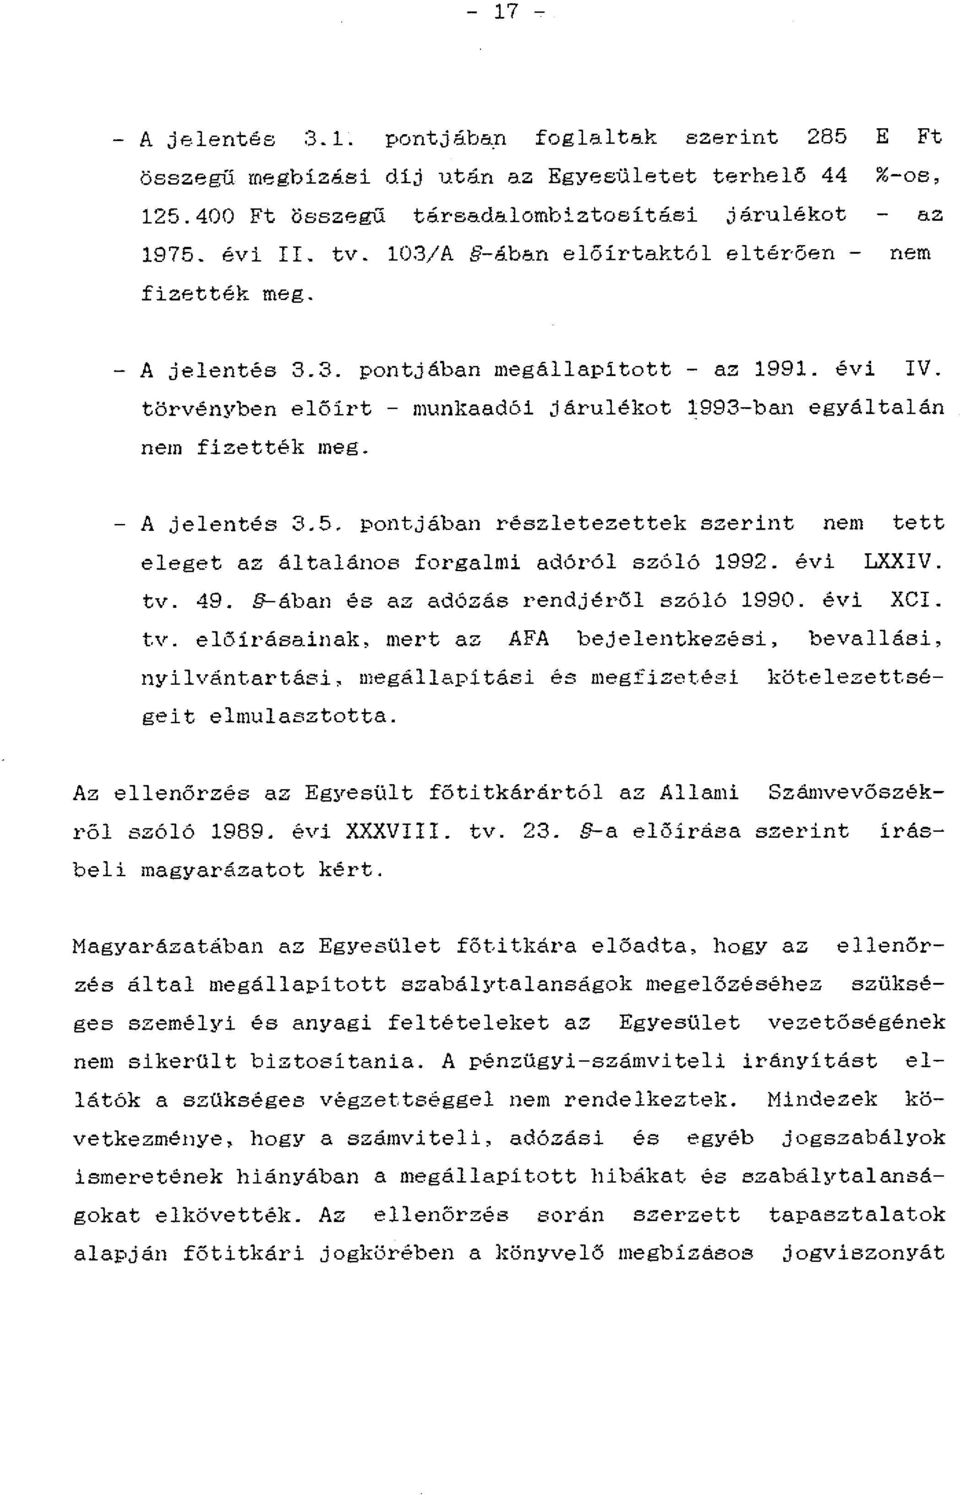 - A jelentés 3.5. pontjában részletezettek szerint nem tett eleget az általános forgalmi adóról szóló 1992. évi LXXIV. tv.